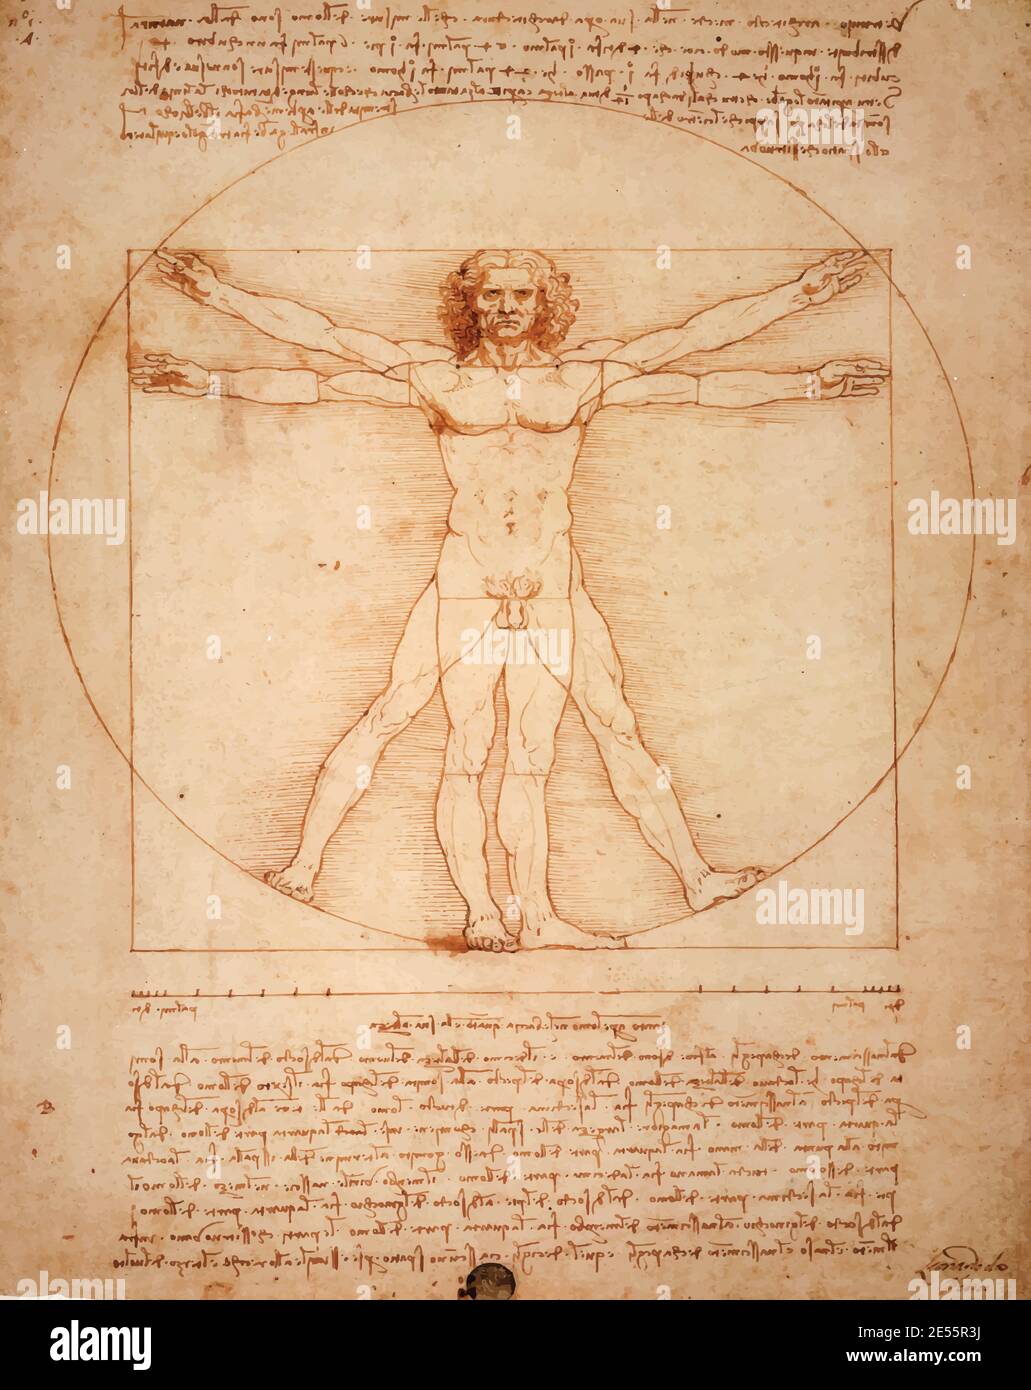 Leonardo DaVinci's Vitruvian Man, Uomo Vitruviano, illustrated in sepia colours Stock Photo